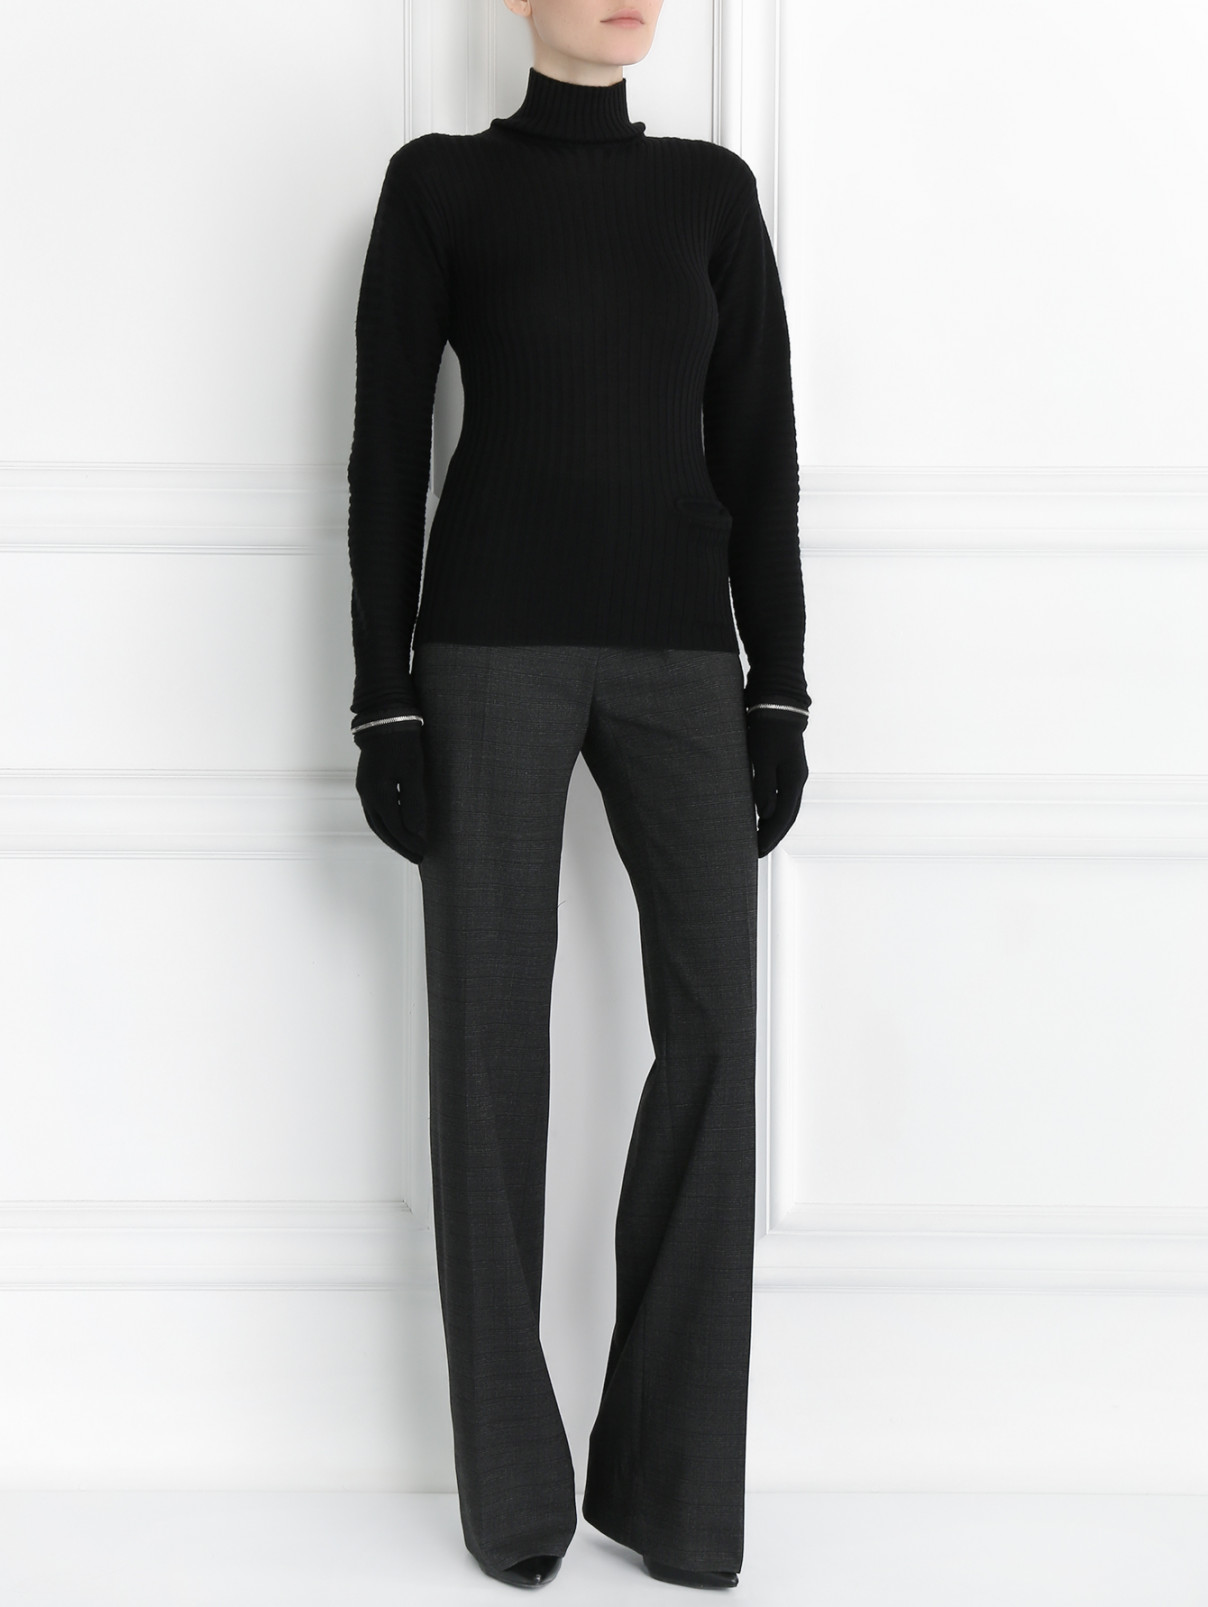 Водолазка из шерсти Jean Paul Gaultier  –  Модель Общий вид  – Цвет:  Черный